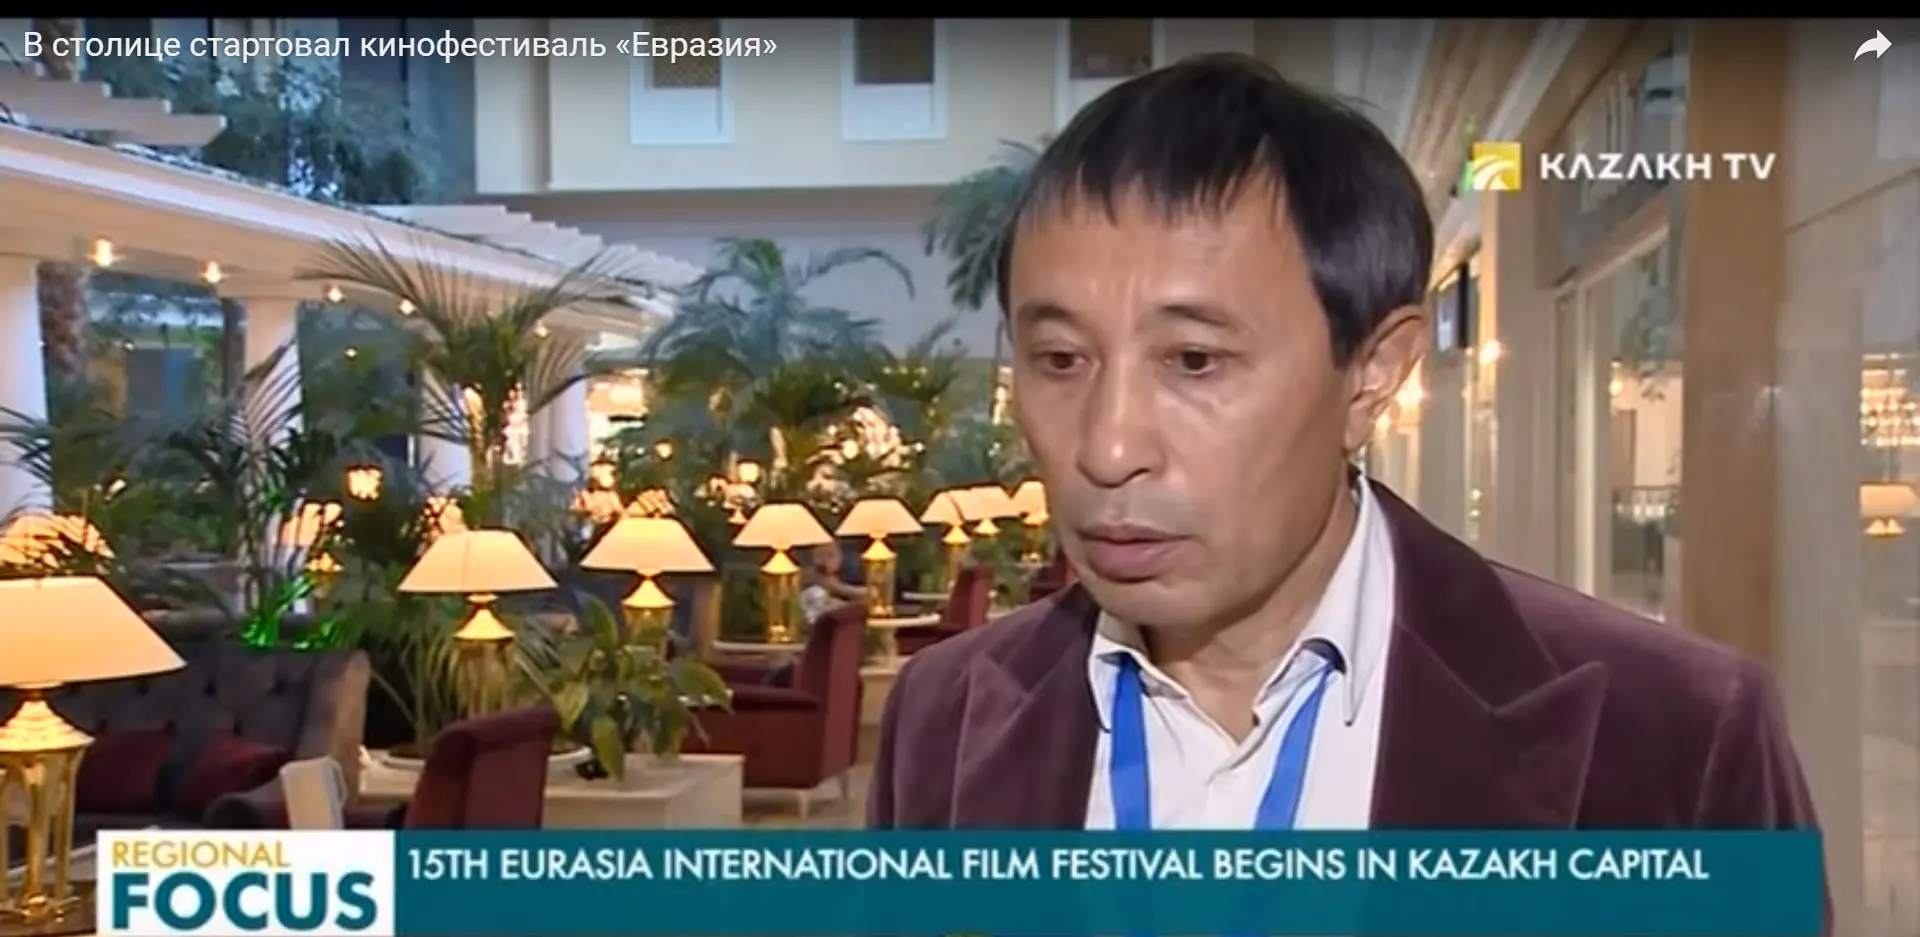 15th Eurasia International Film Festival Begins in Kazakh Capital